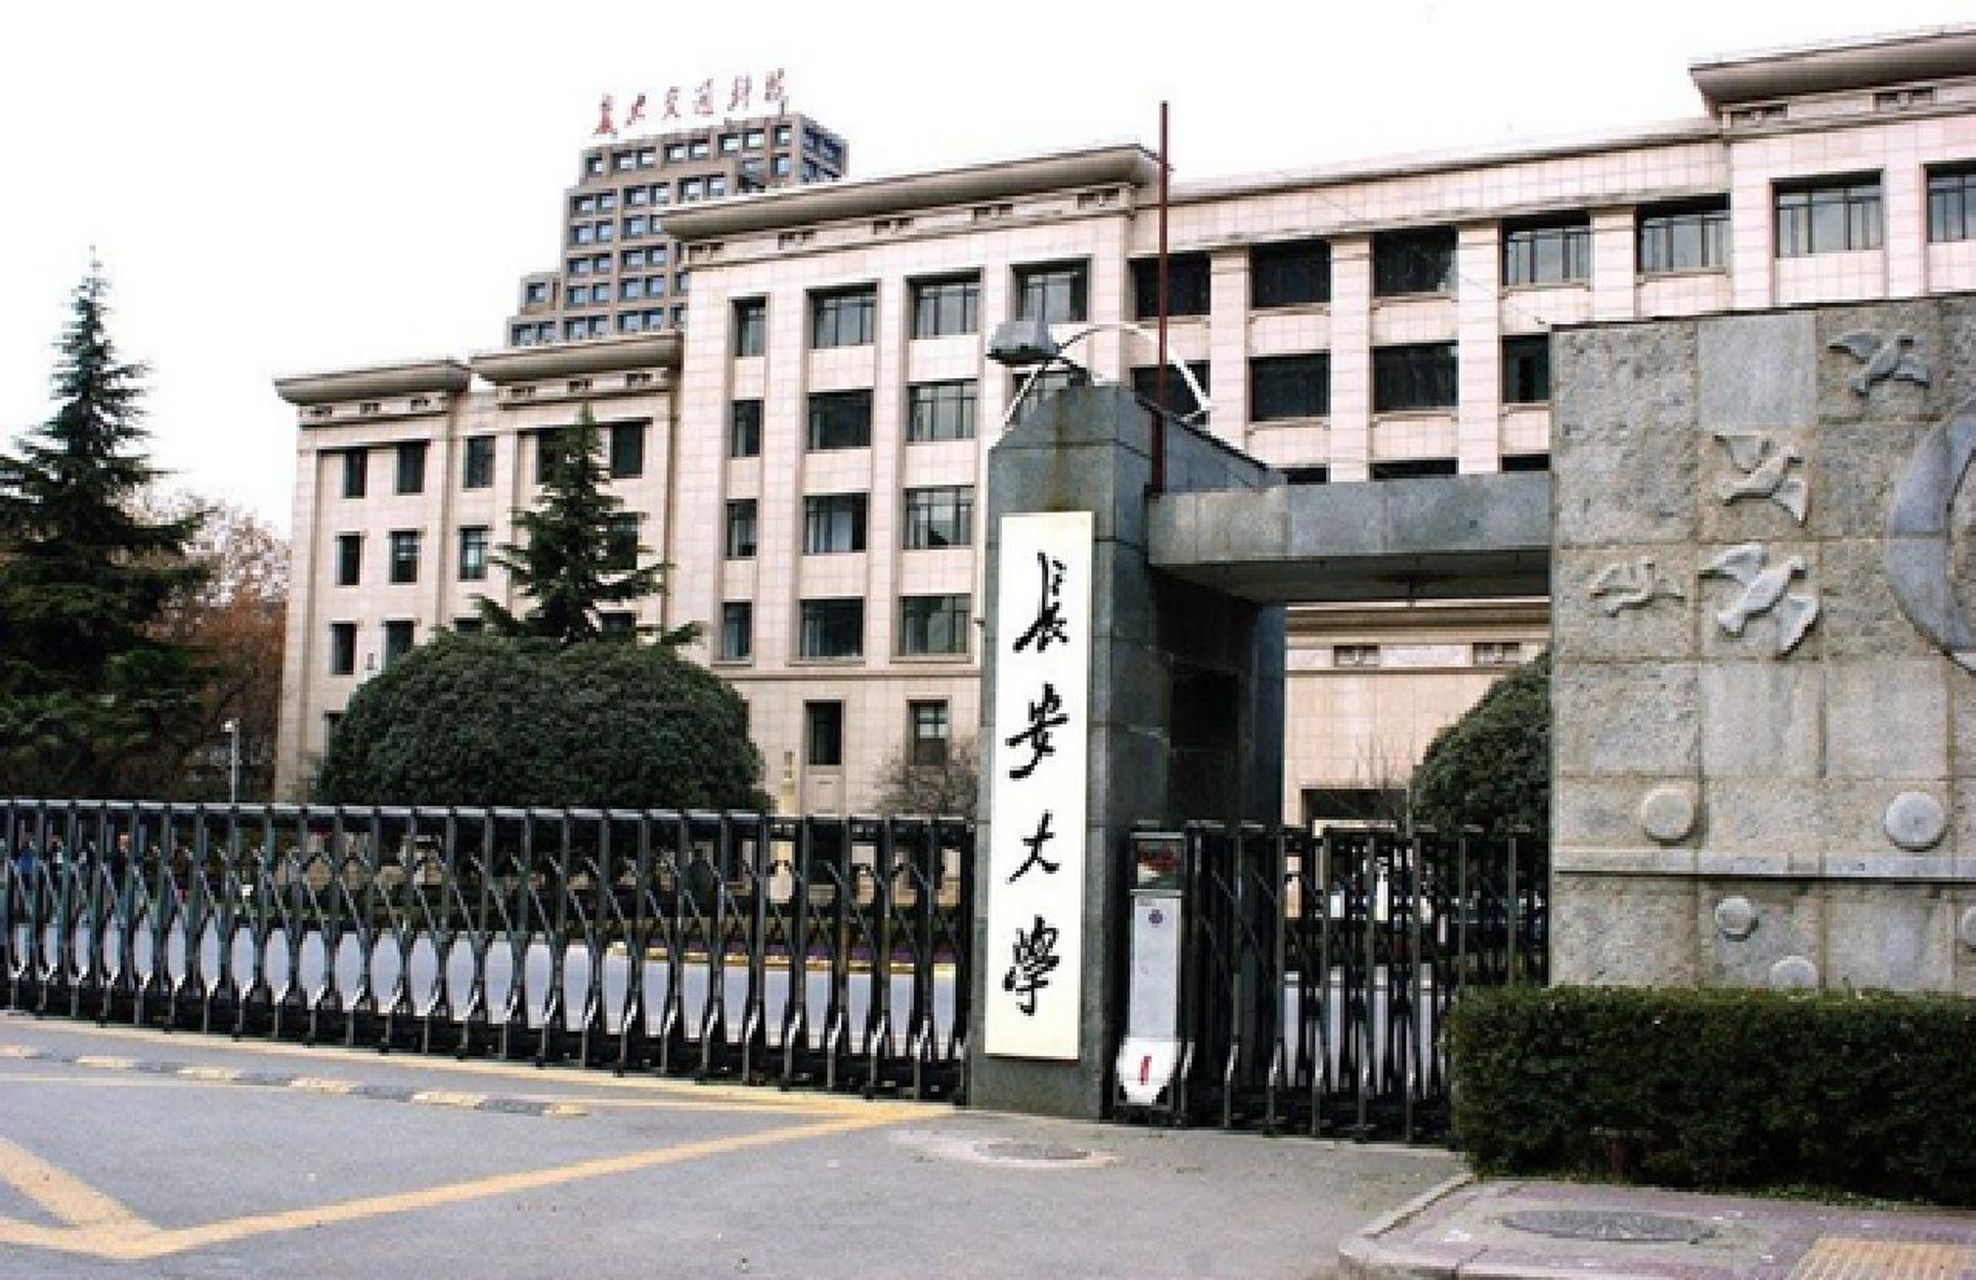 24考研院校推介——长安大学 长安大学位于陕西省西安市,是教育部直属